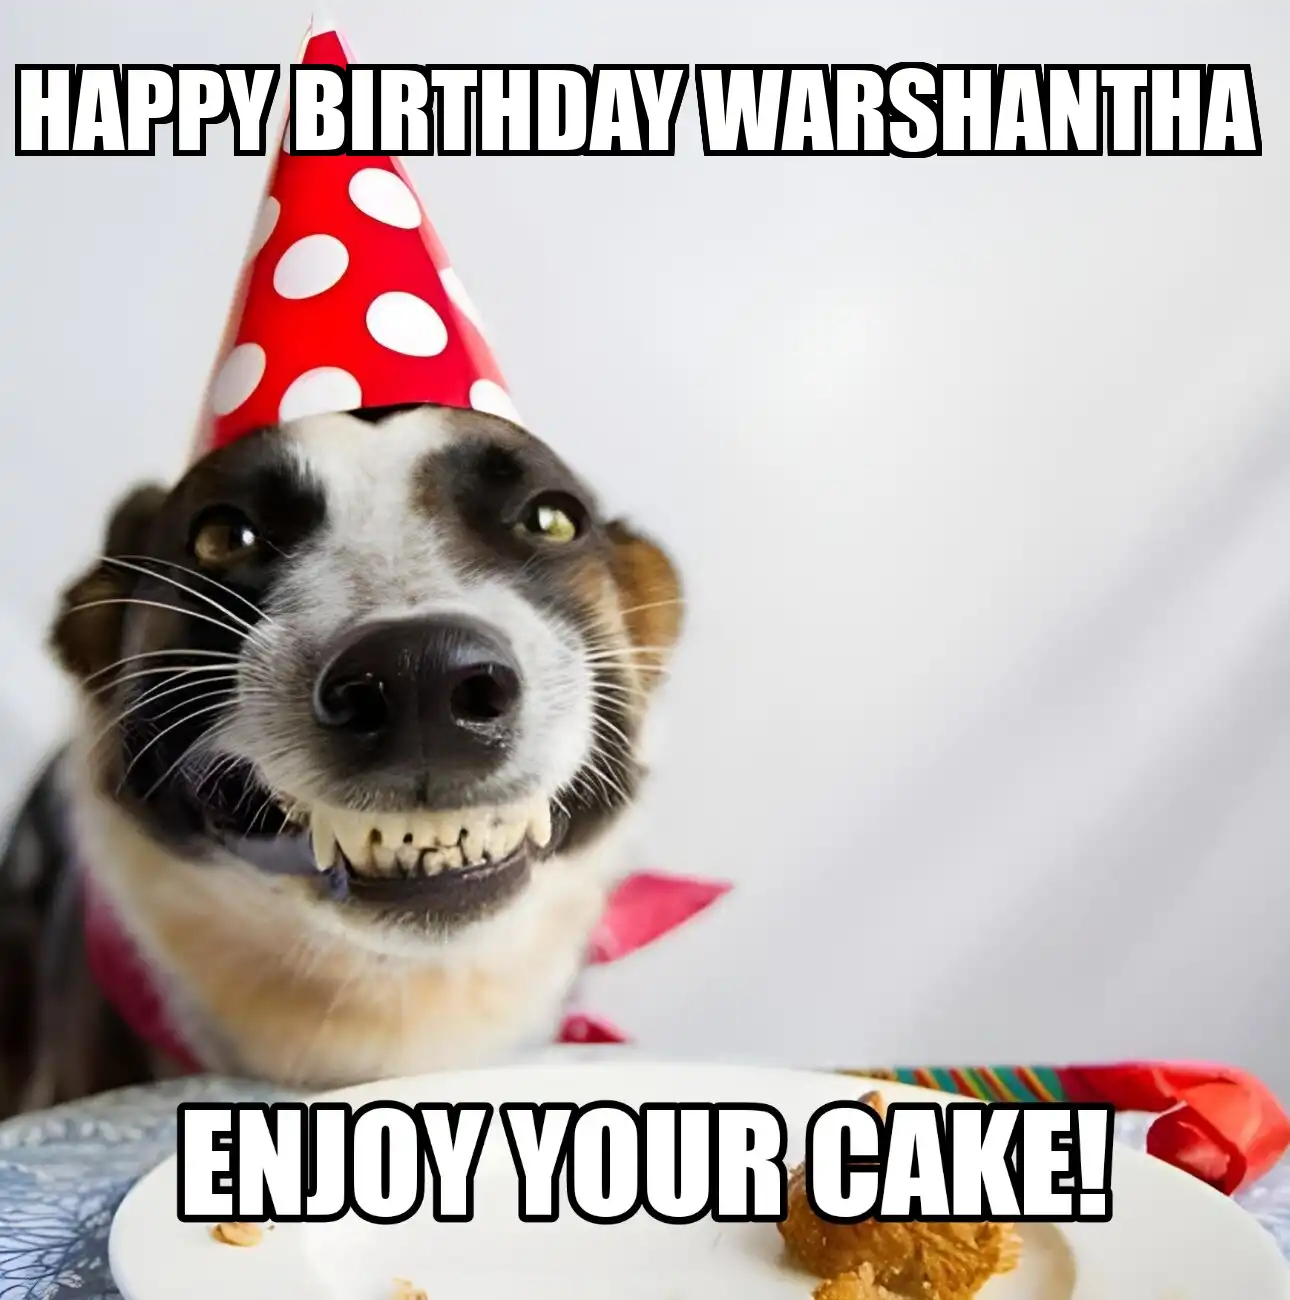 Happy Birthday Warshantha Enjoy Your Cake Dog Meme